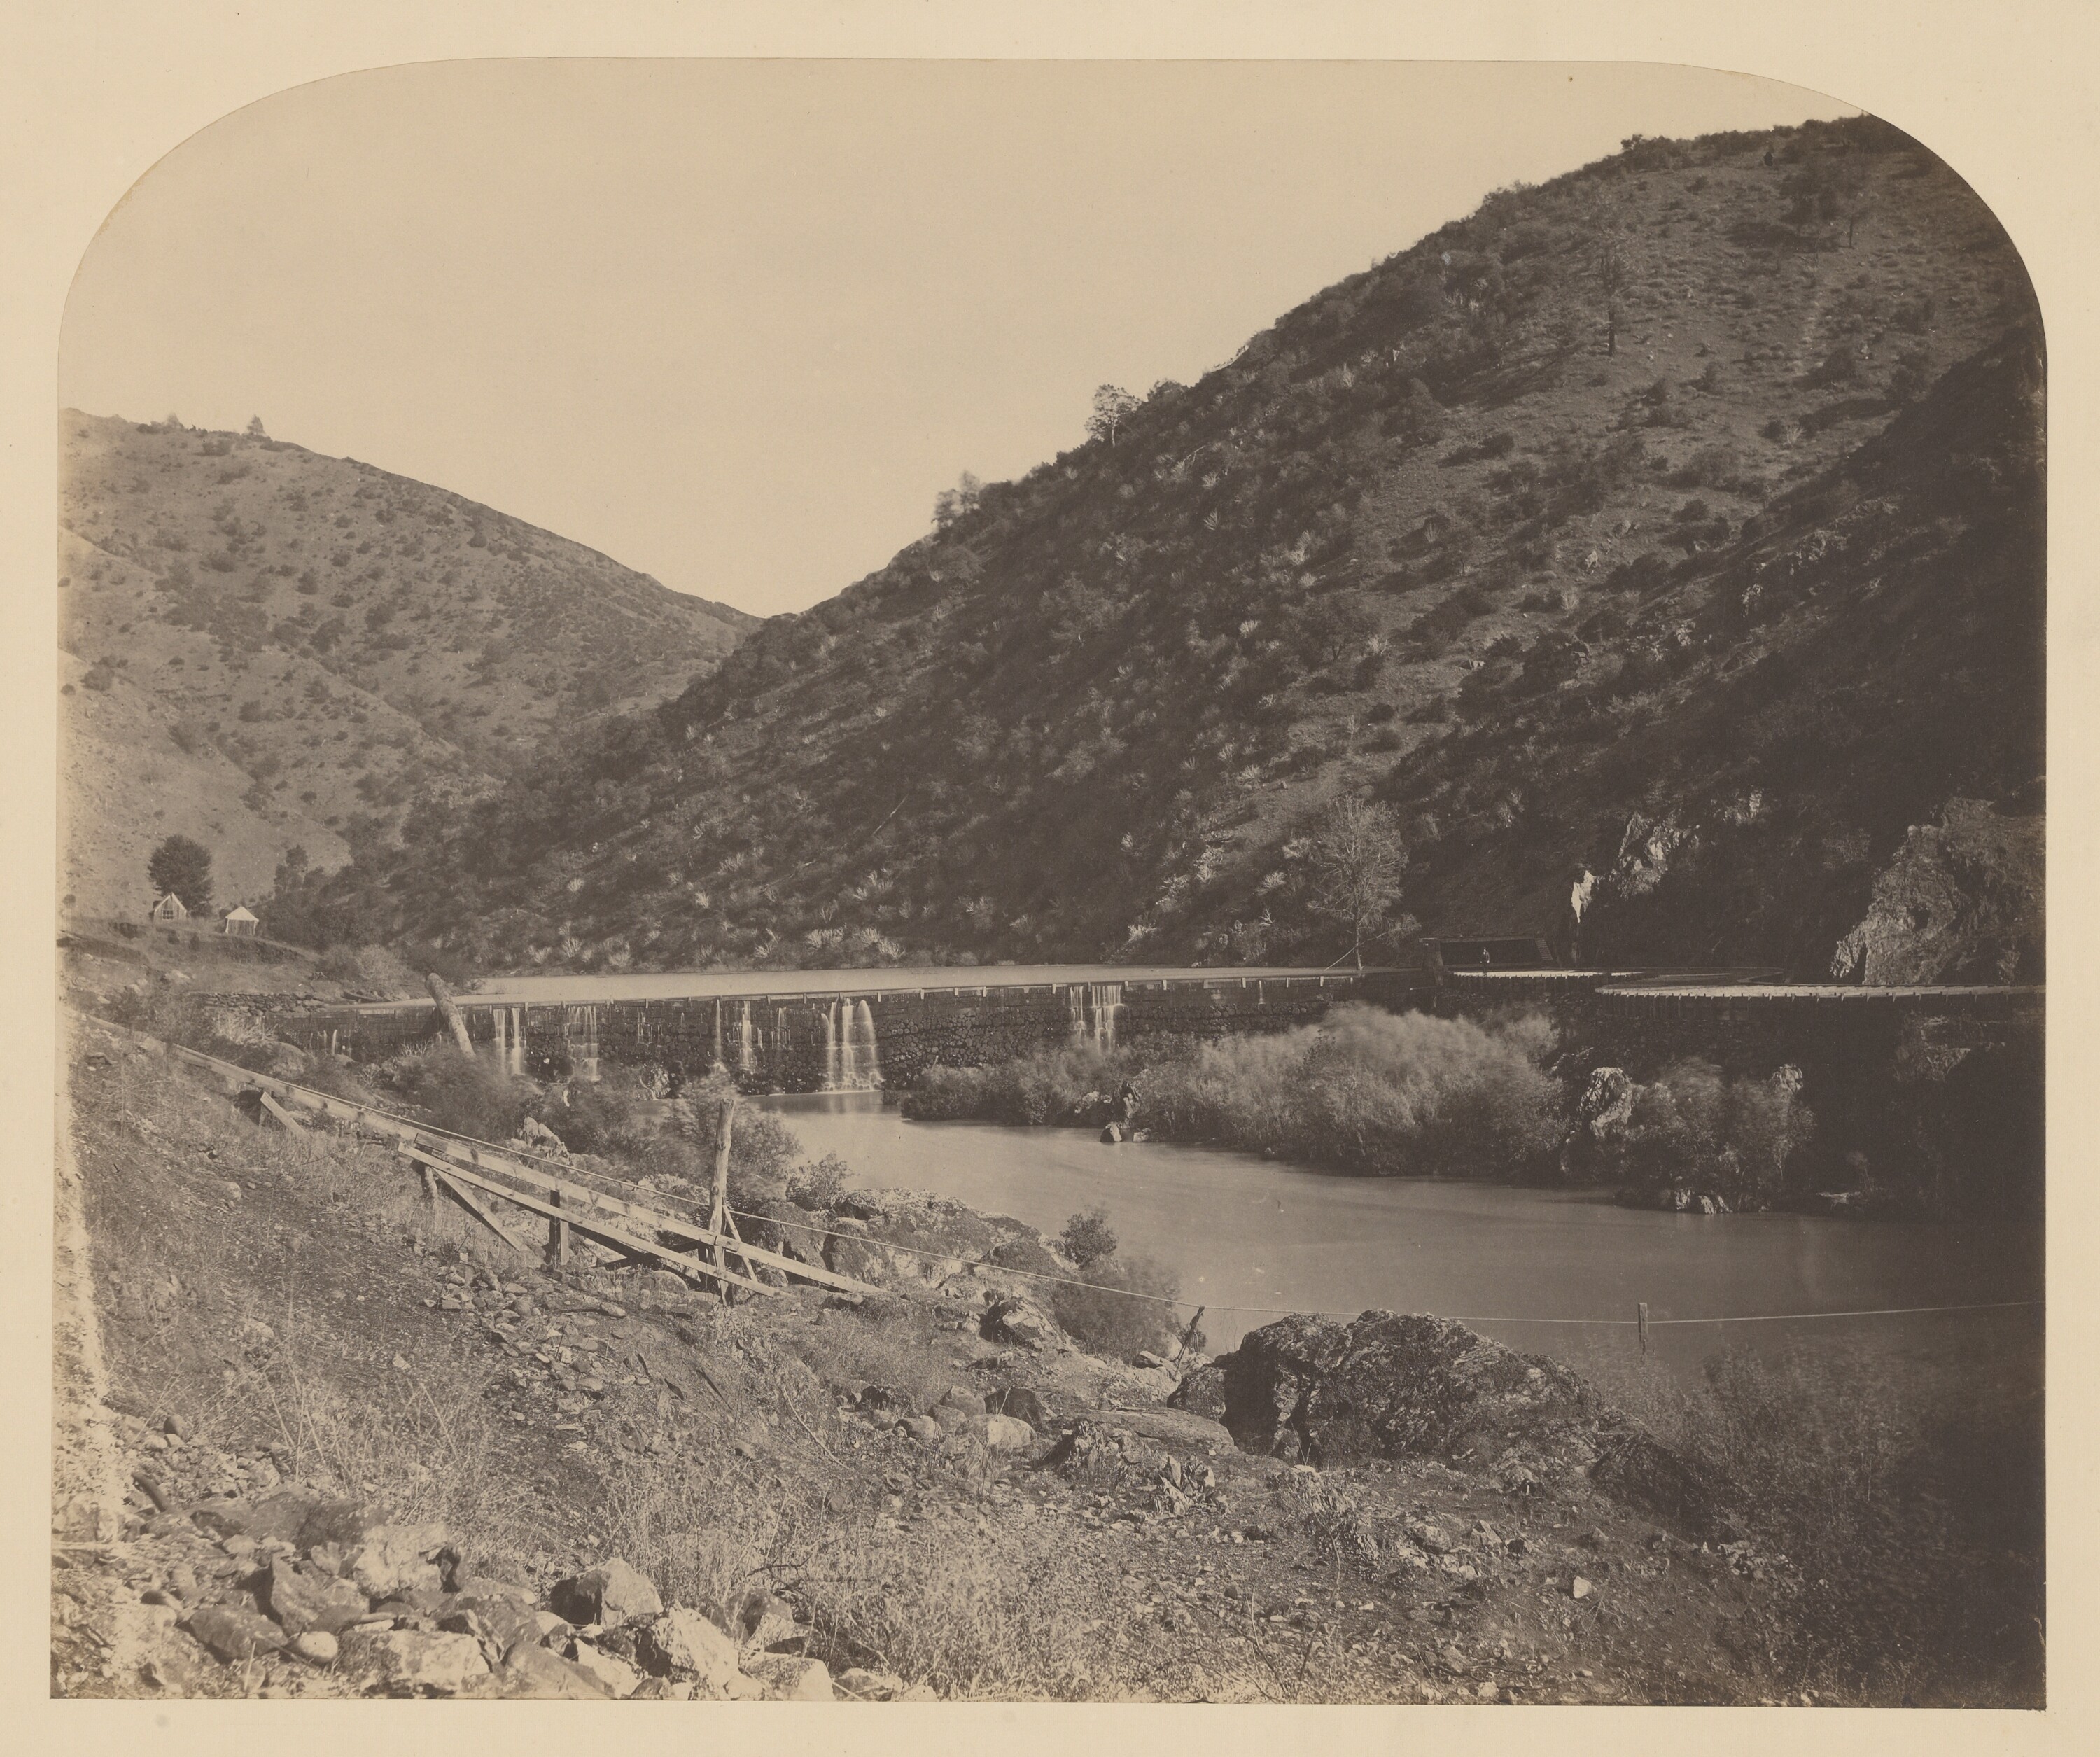 Benton Dam, Merced River circa 1860